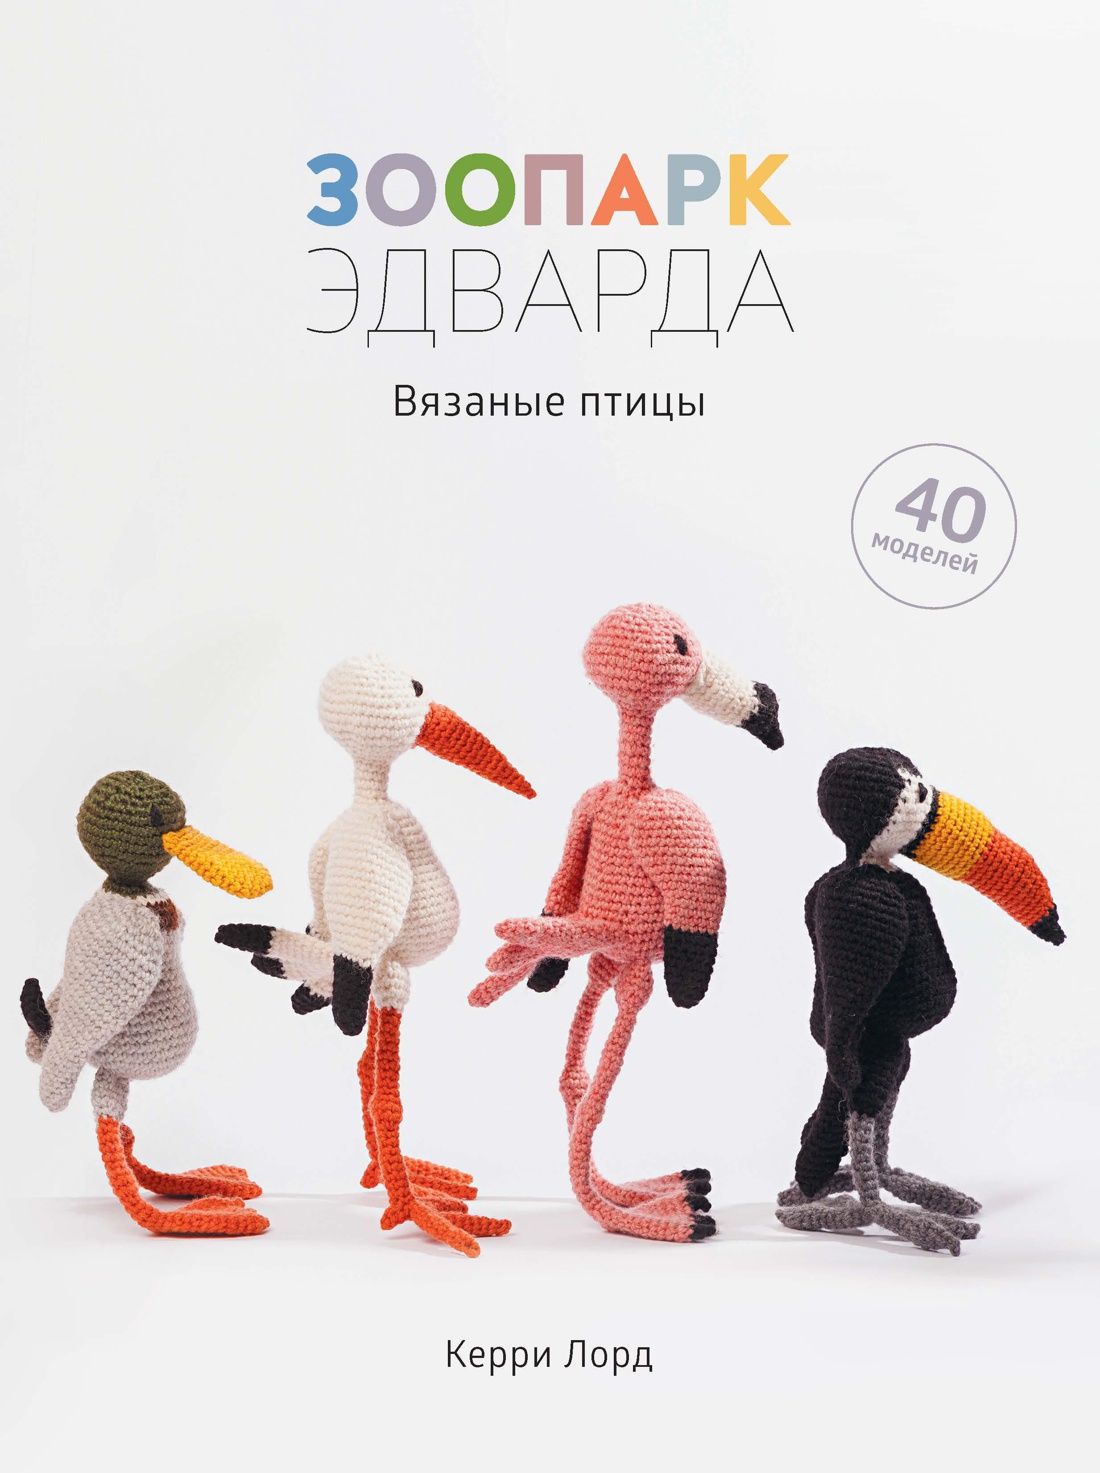 Птицы крючком - схемы и описания игрушек амигуруми.